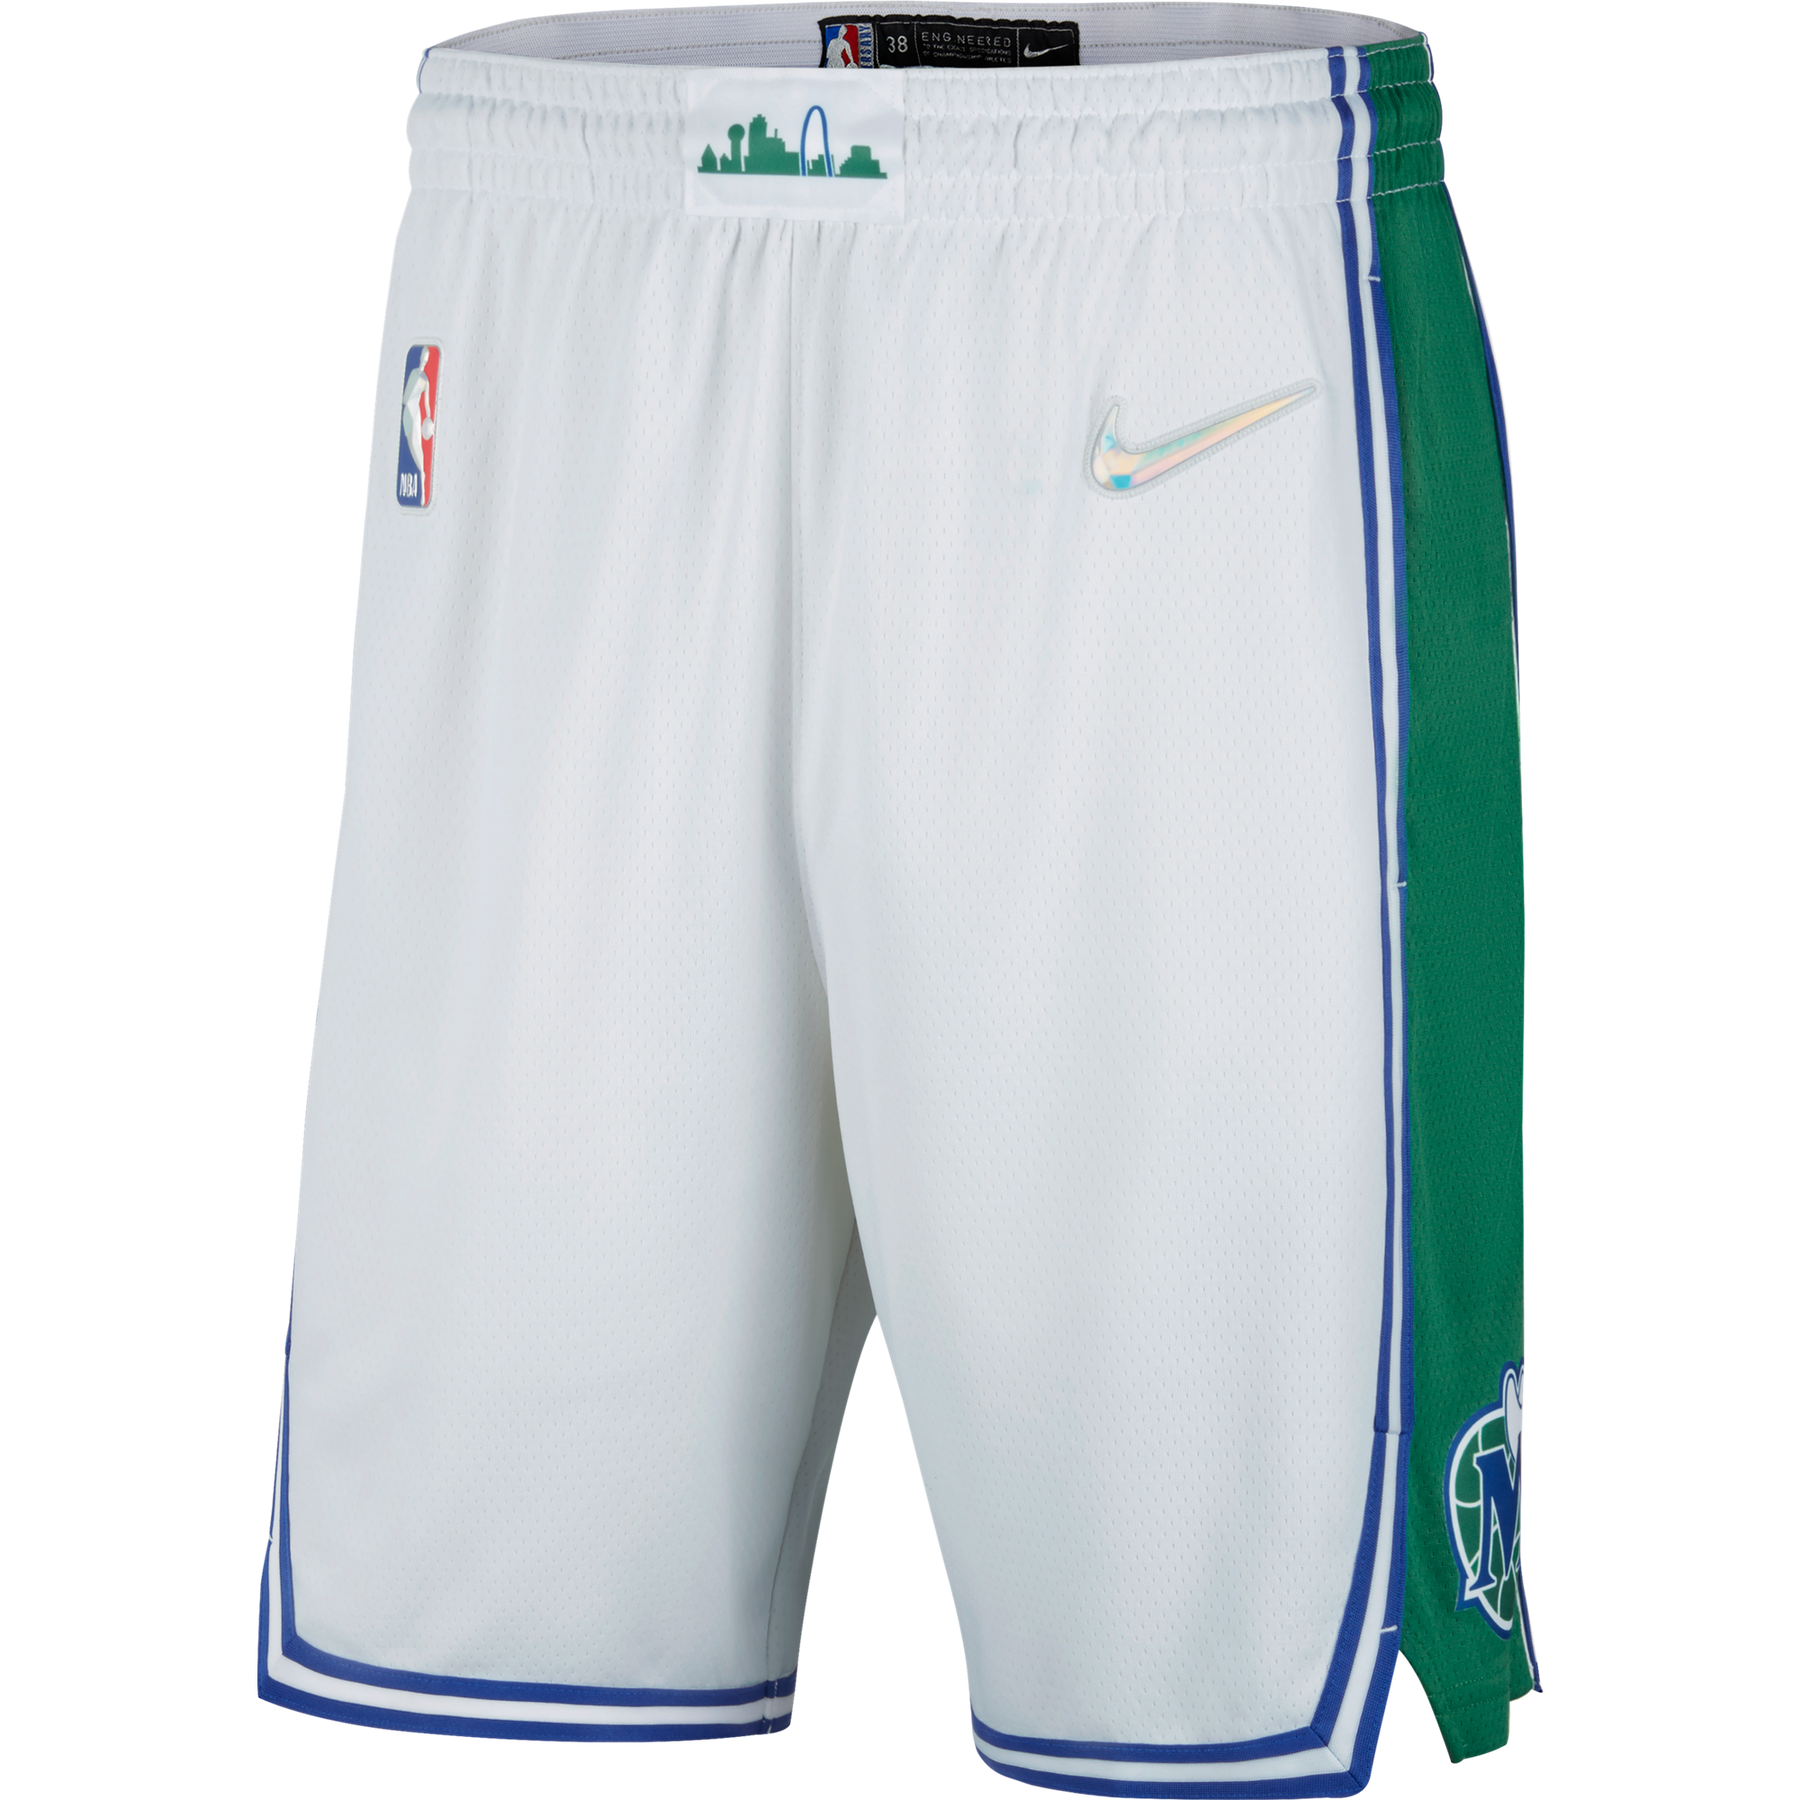 Boston Celtics City Edition Men's Nike Dri-FIT NBA Swingman Shorts.